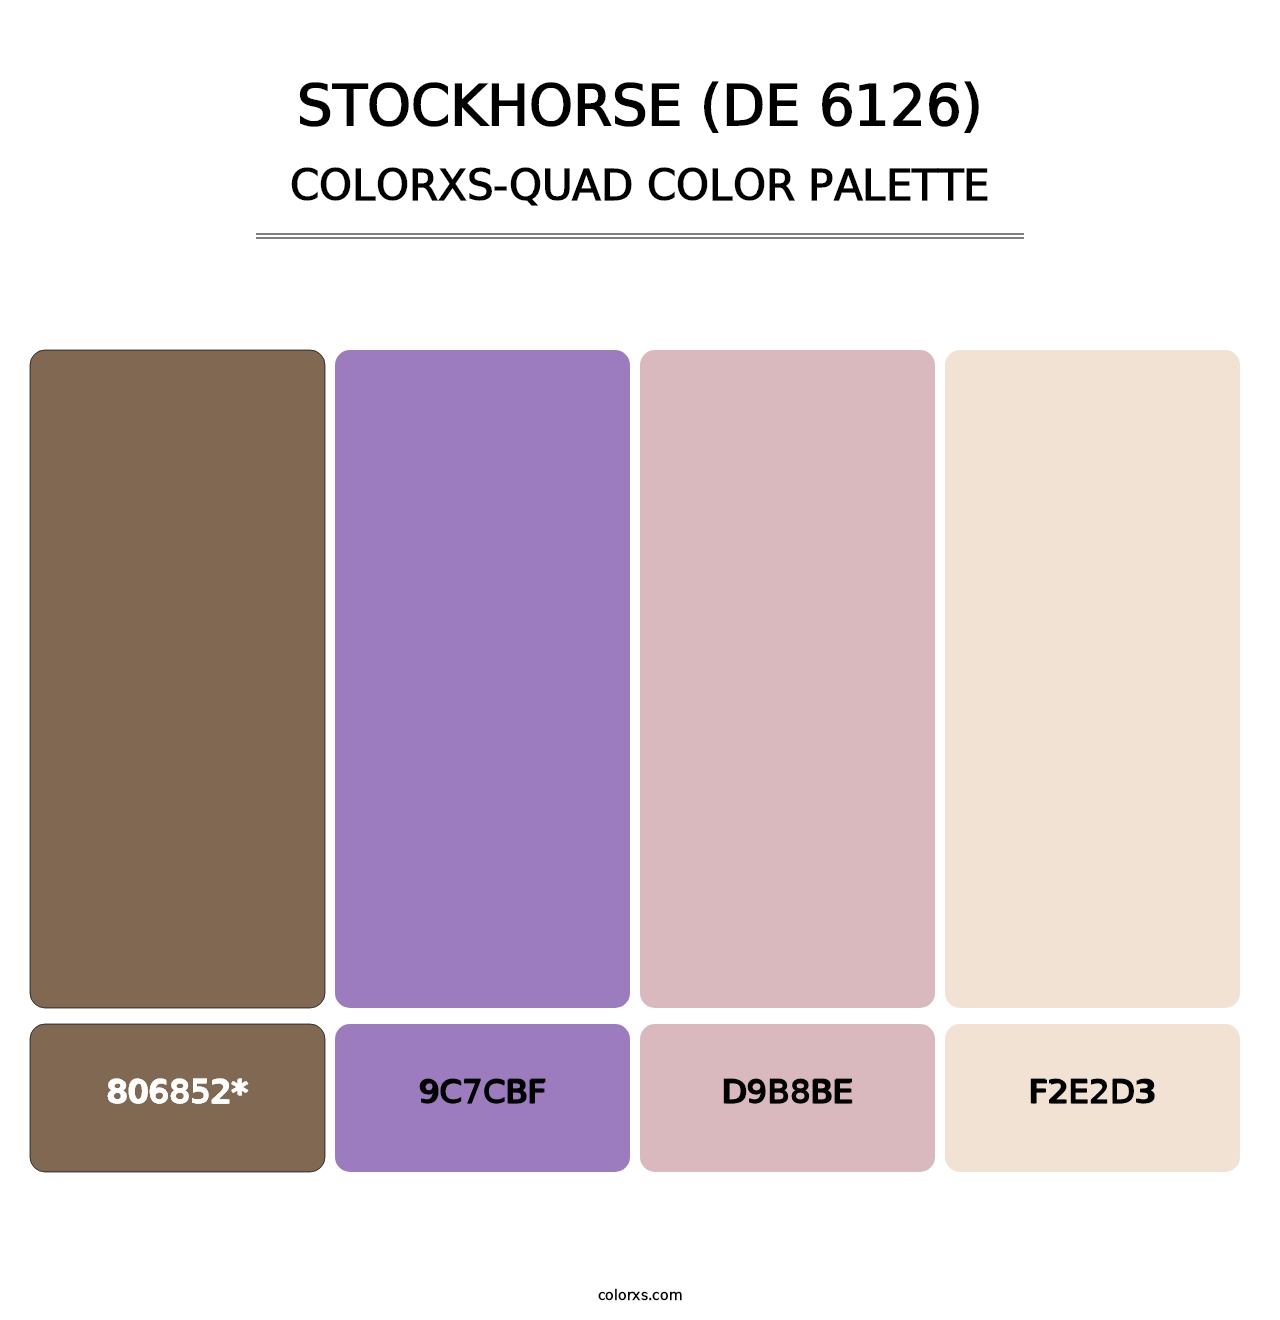 Stockhorse (DE 6126) - Colorxs Quad Palette